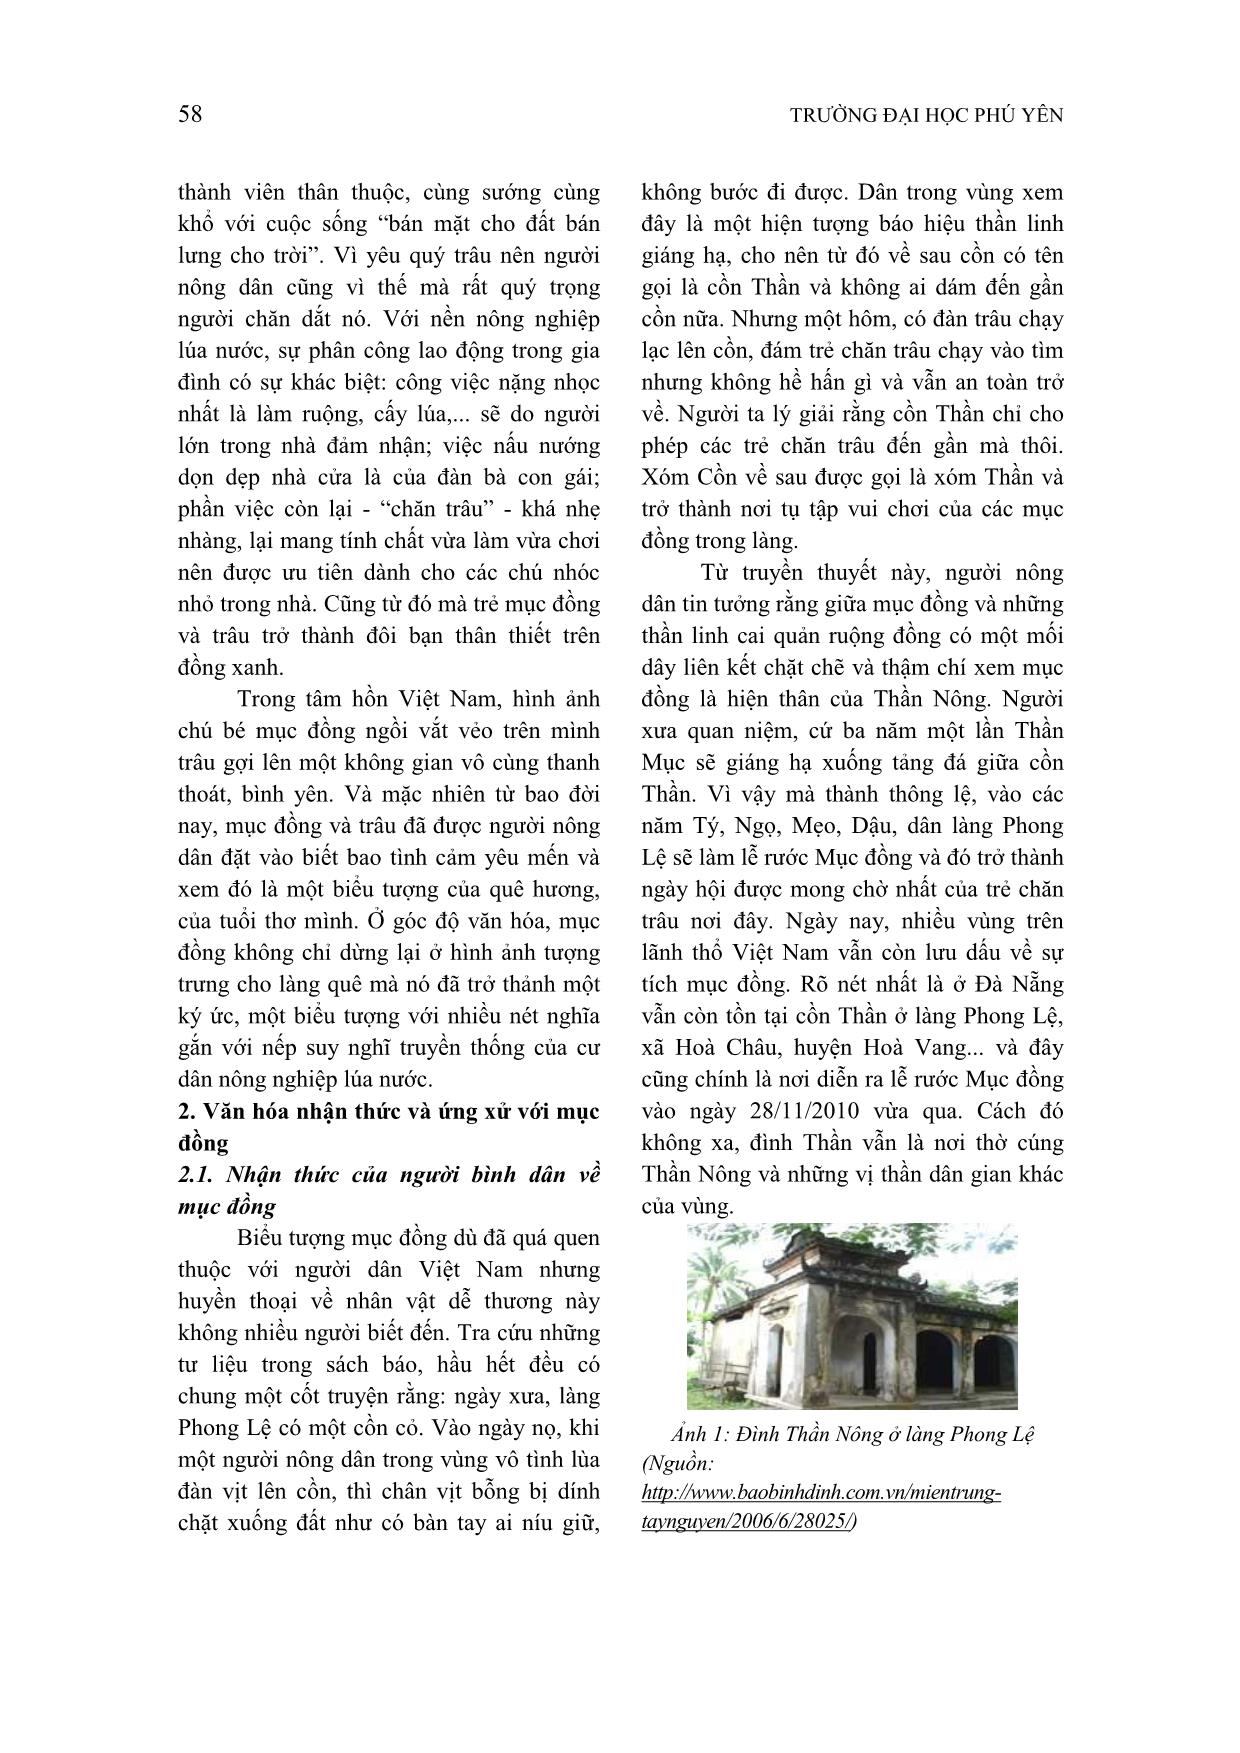 Biểu tượng mục đồng trong văn hóa dân gian Việt Nam trang 2